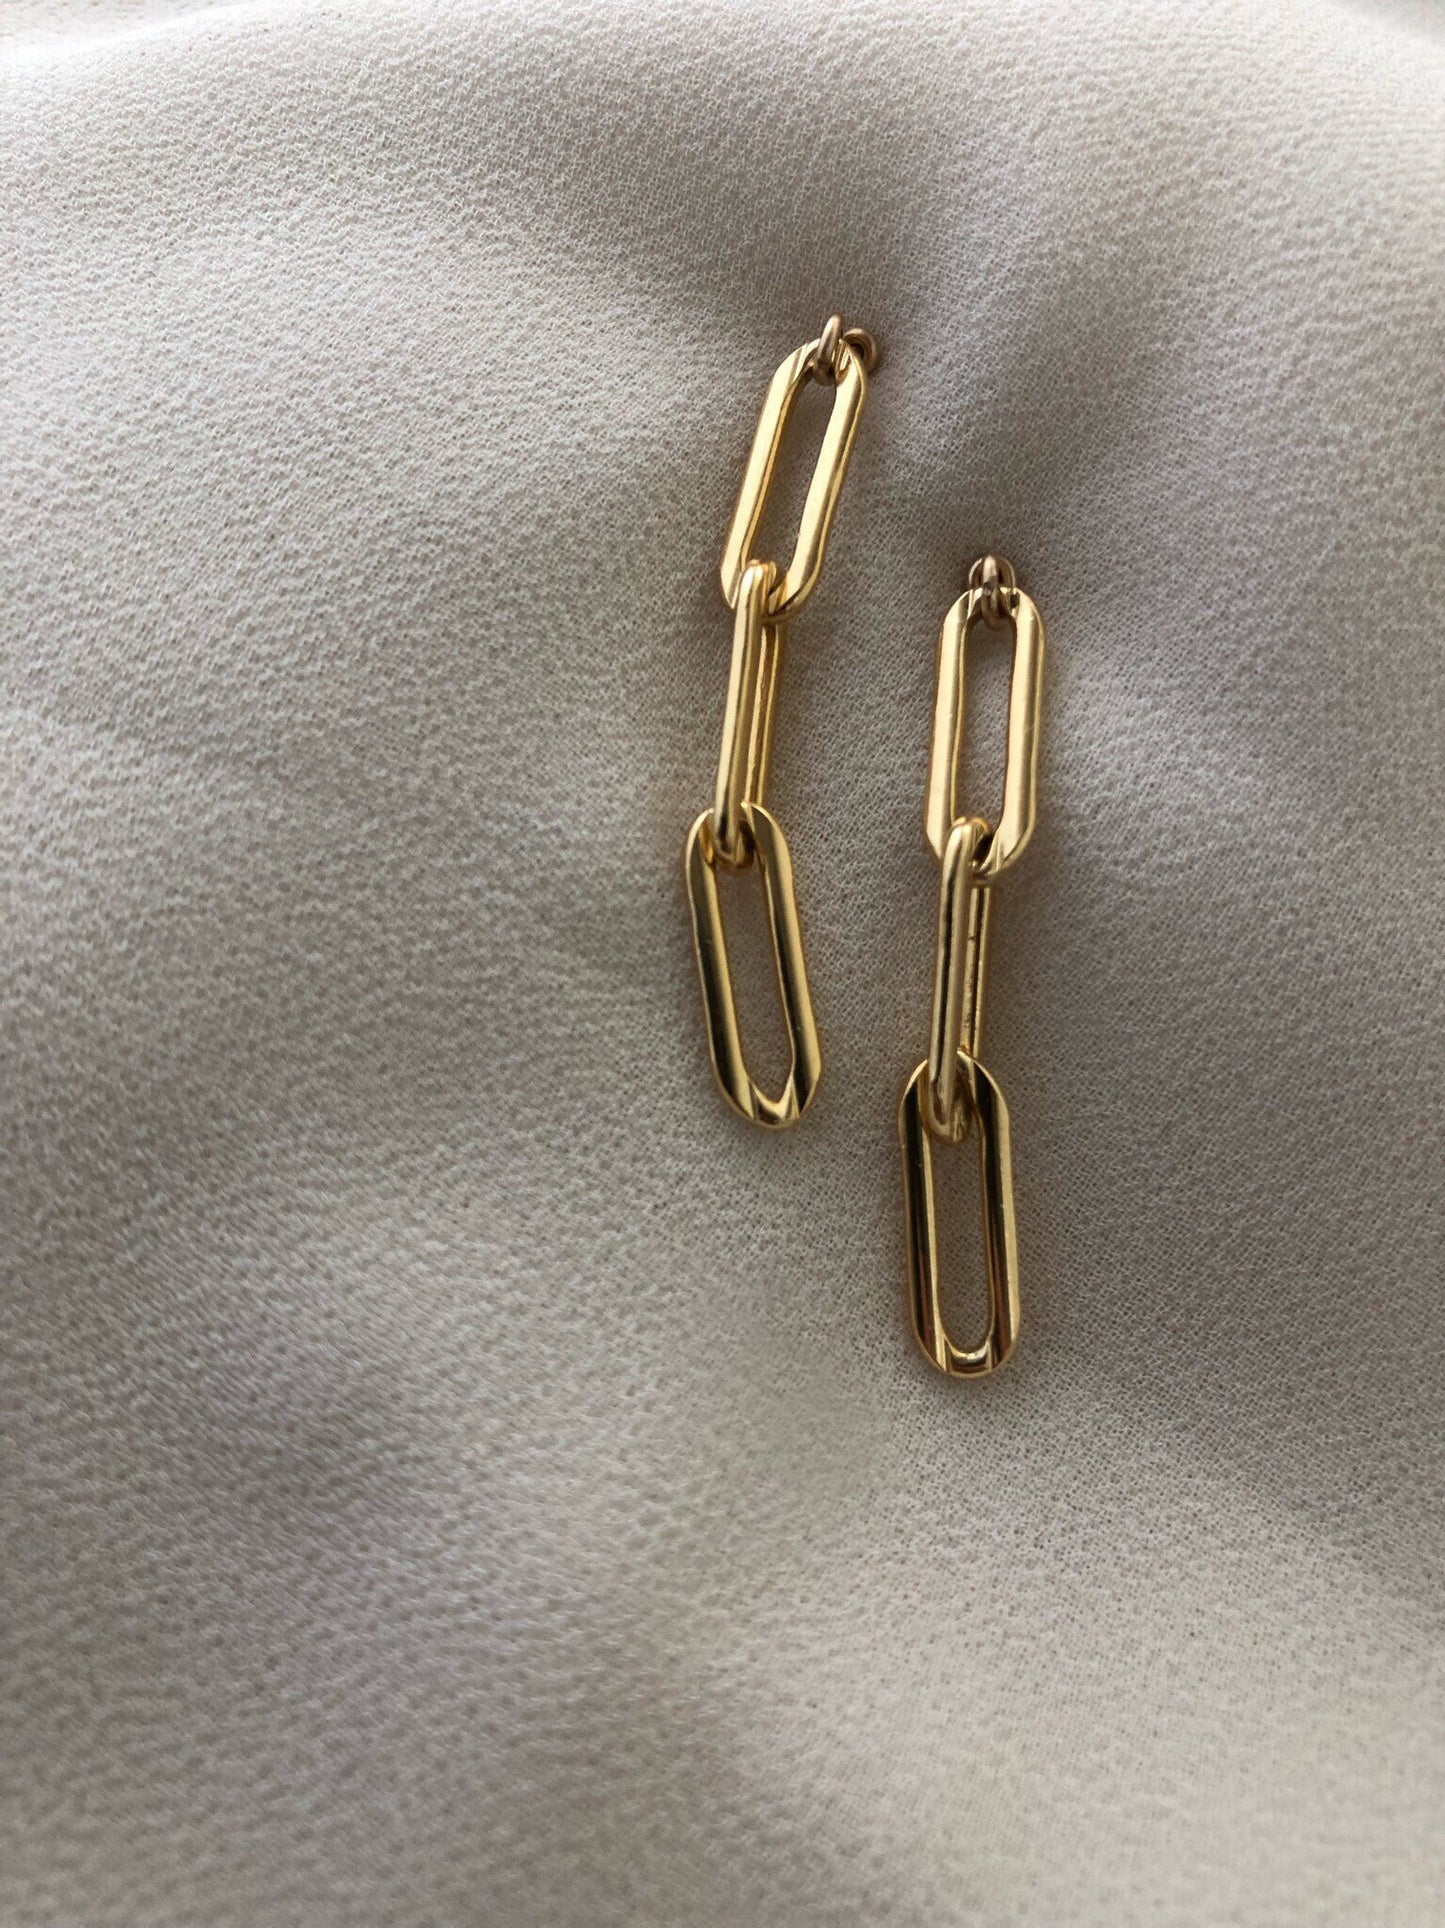 CHARLI Chain Link Earrings